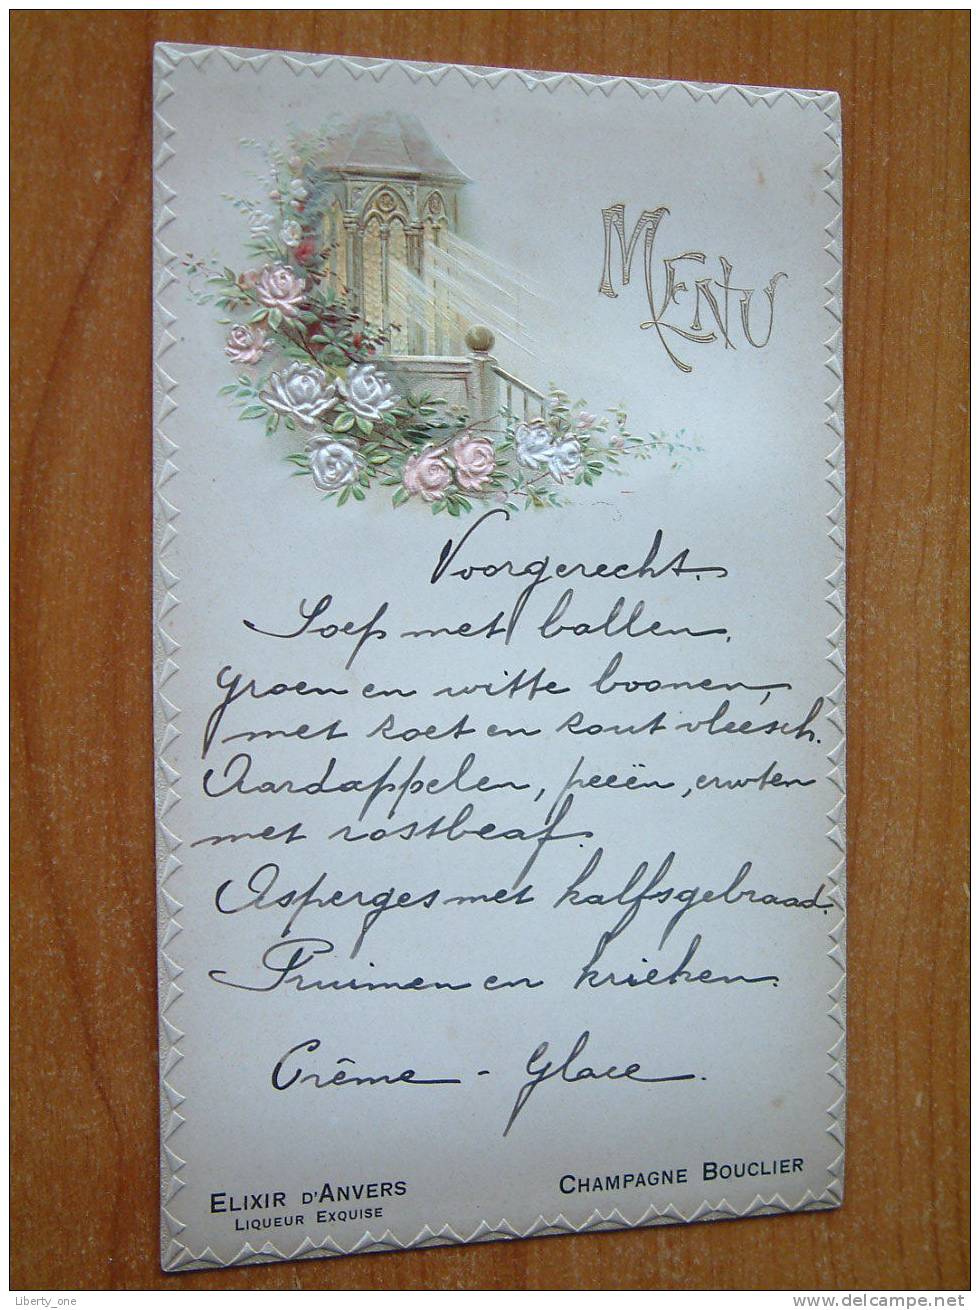 Huwelijk Van M. LEEMANS En L. BUELENS / Hemixem 9 Mei 1936 ( Details Zie Foto ) ! - Menu